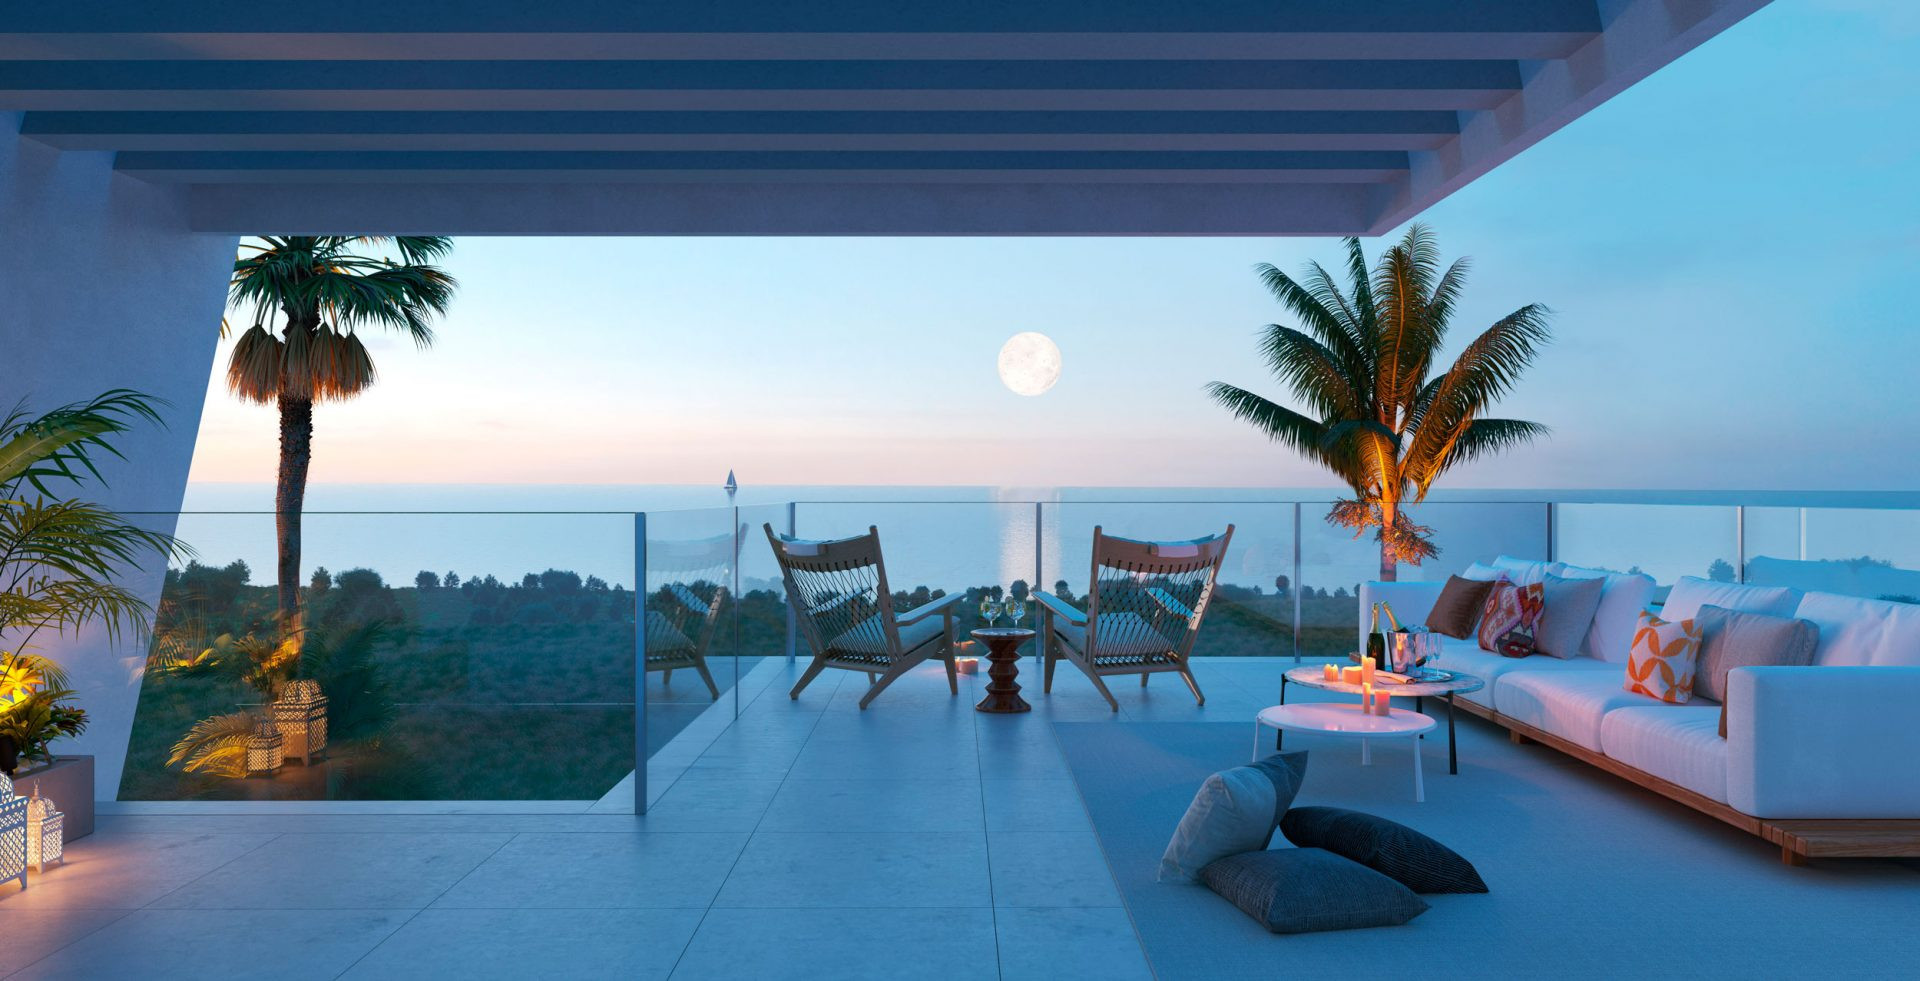 Eden by Kronos Homes, exclusivas casas adosadas con impresionantes vistas al mar en Mijas Costa